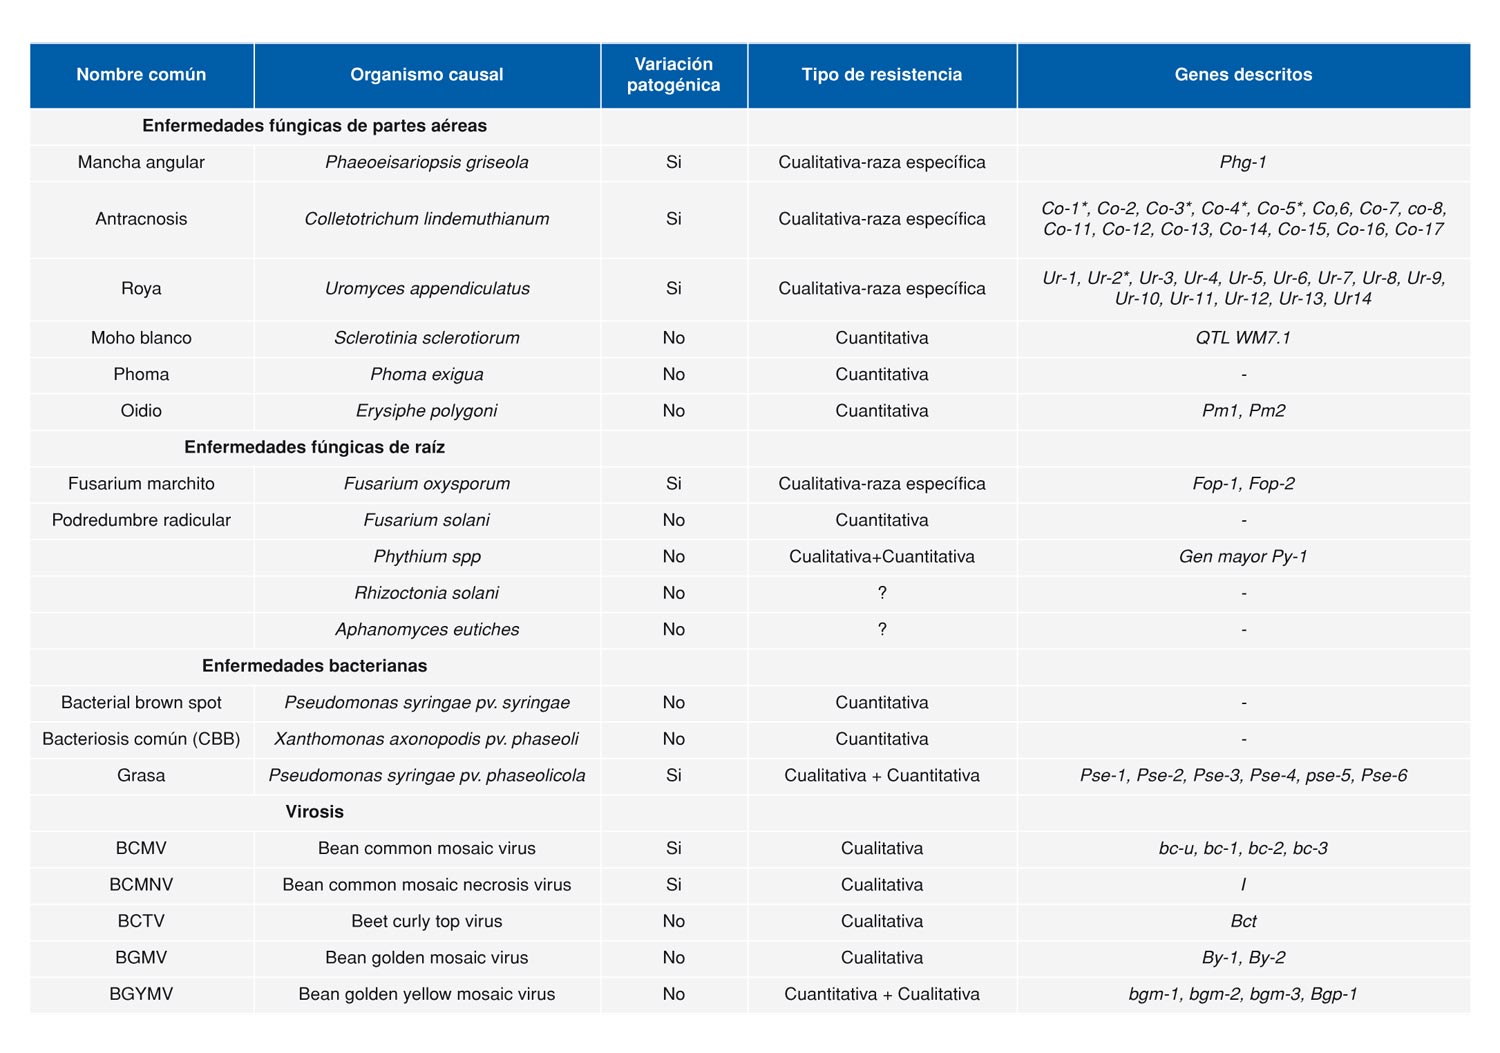 Tabla 1. Lista de las principales enfermedades presentes en los cultivos de juda comn (Phaseolus vulgaris L.) (adaptada de Singh y Schwartz 2010)...